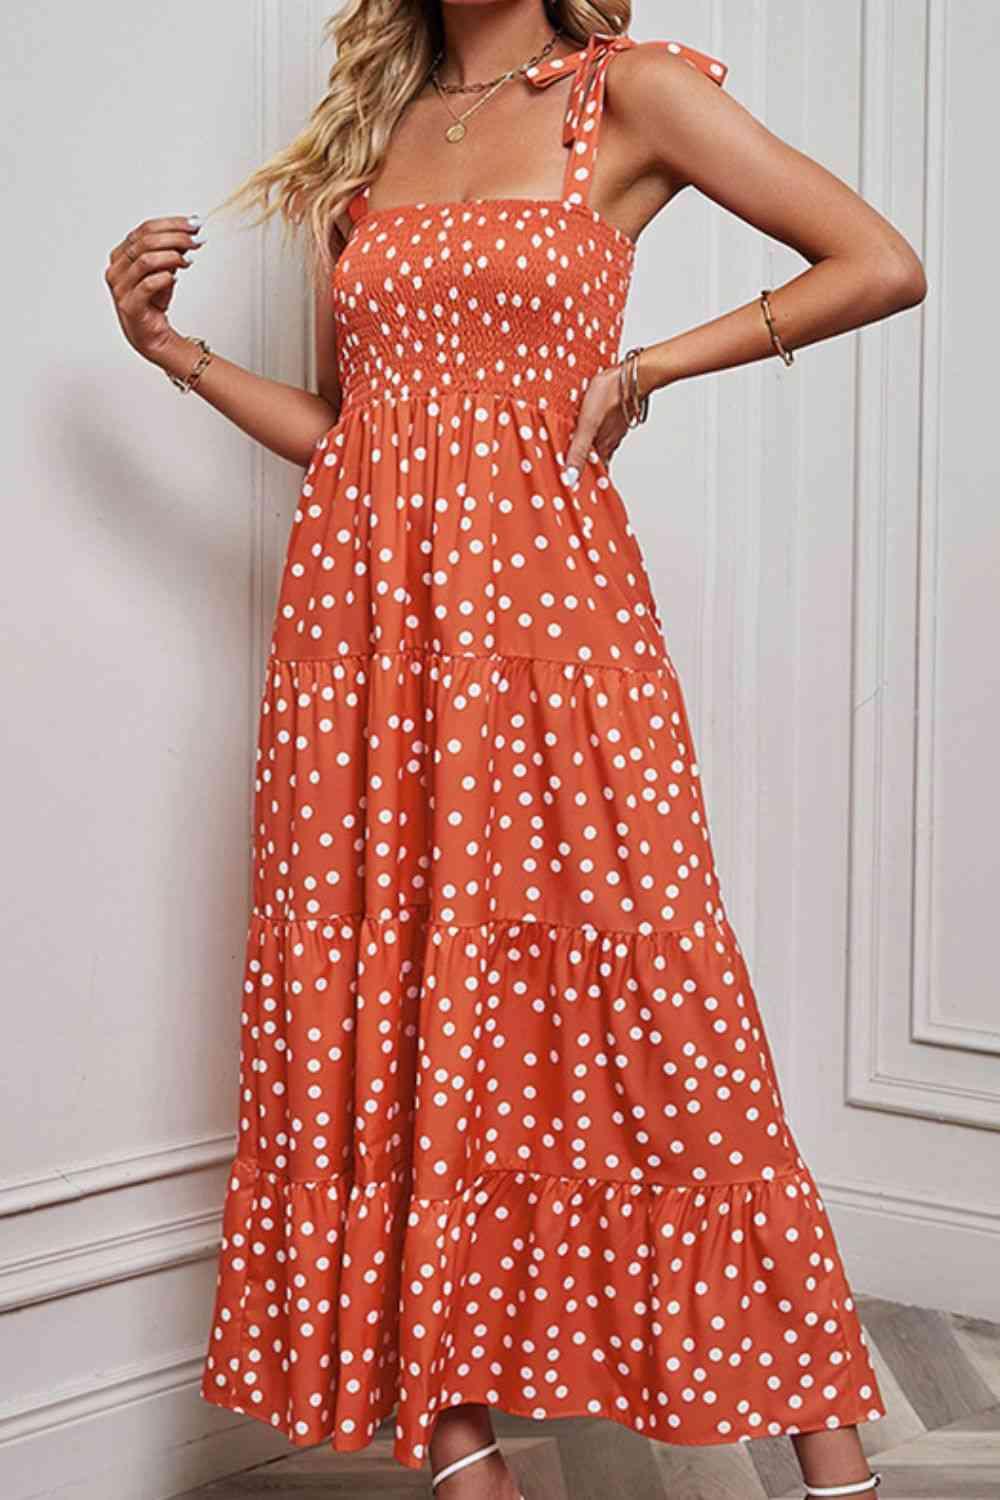 a woman in an orange polka dot print dress